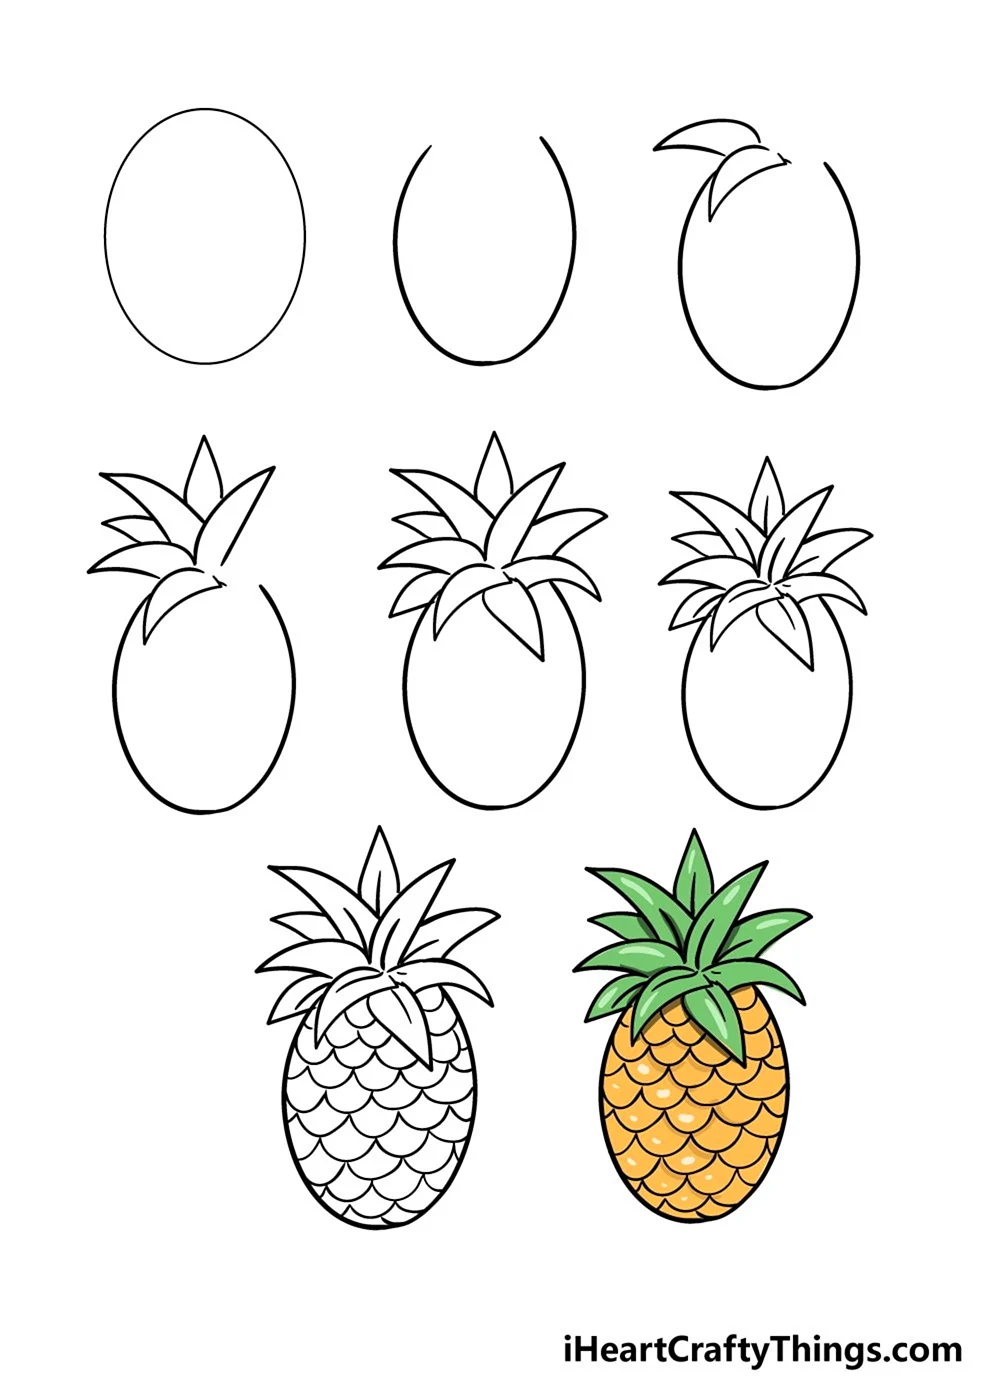 Как нарисовать ананас легко и просто для детей 8 лет